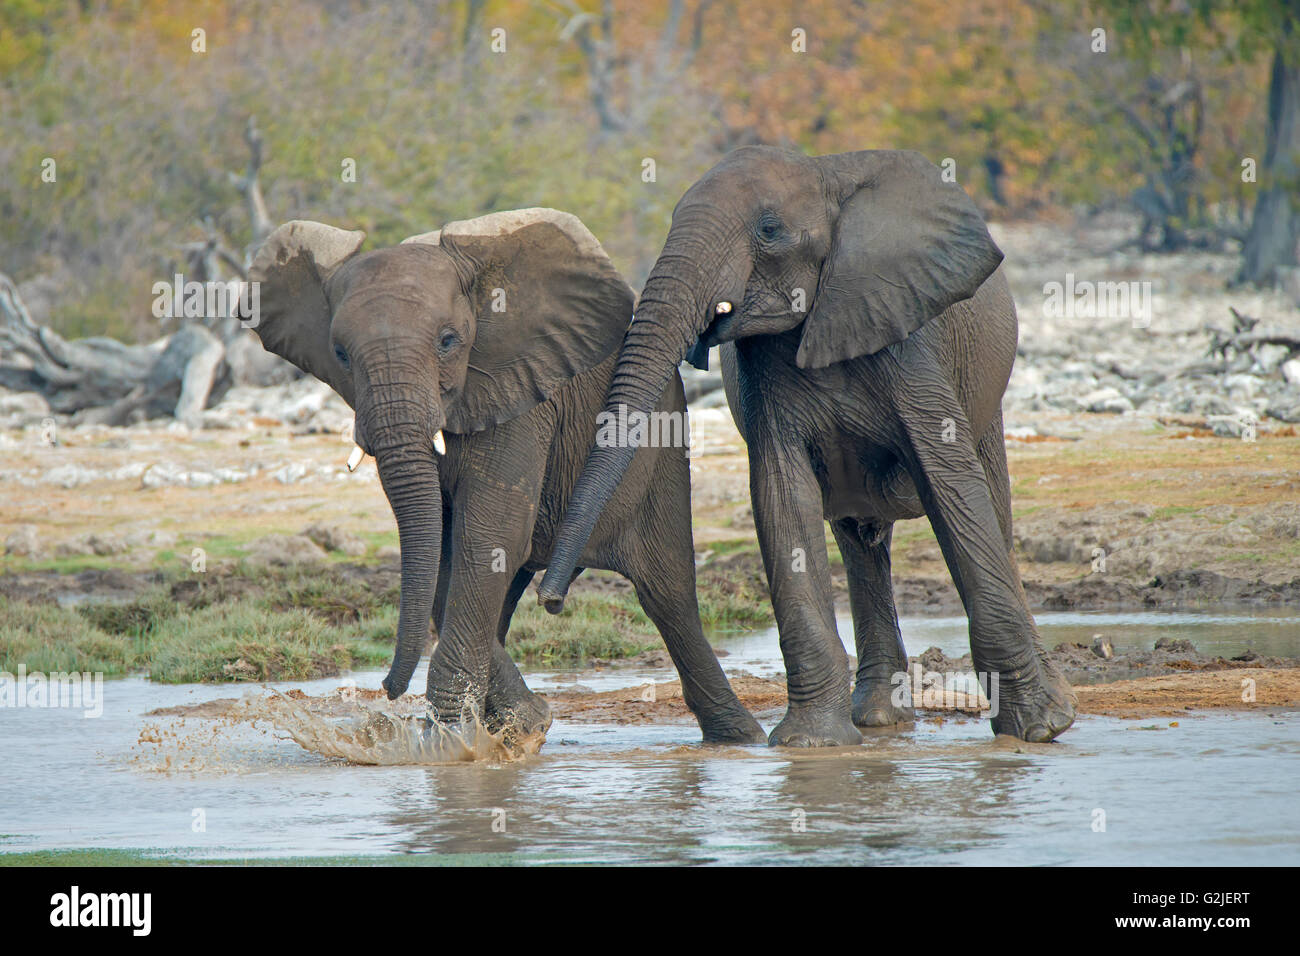 Los menores el elefante africano (Loxodonta africana) jugando, el Parque Nacional de Etosha, Namibia, Africa del Sur Foto de stock